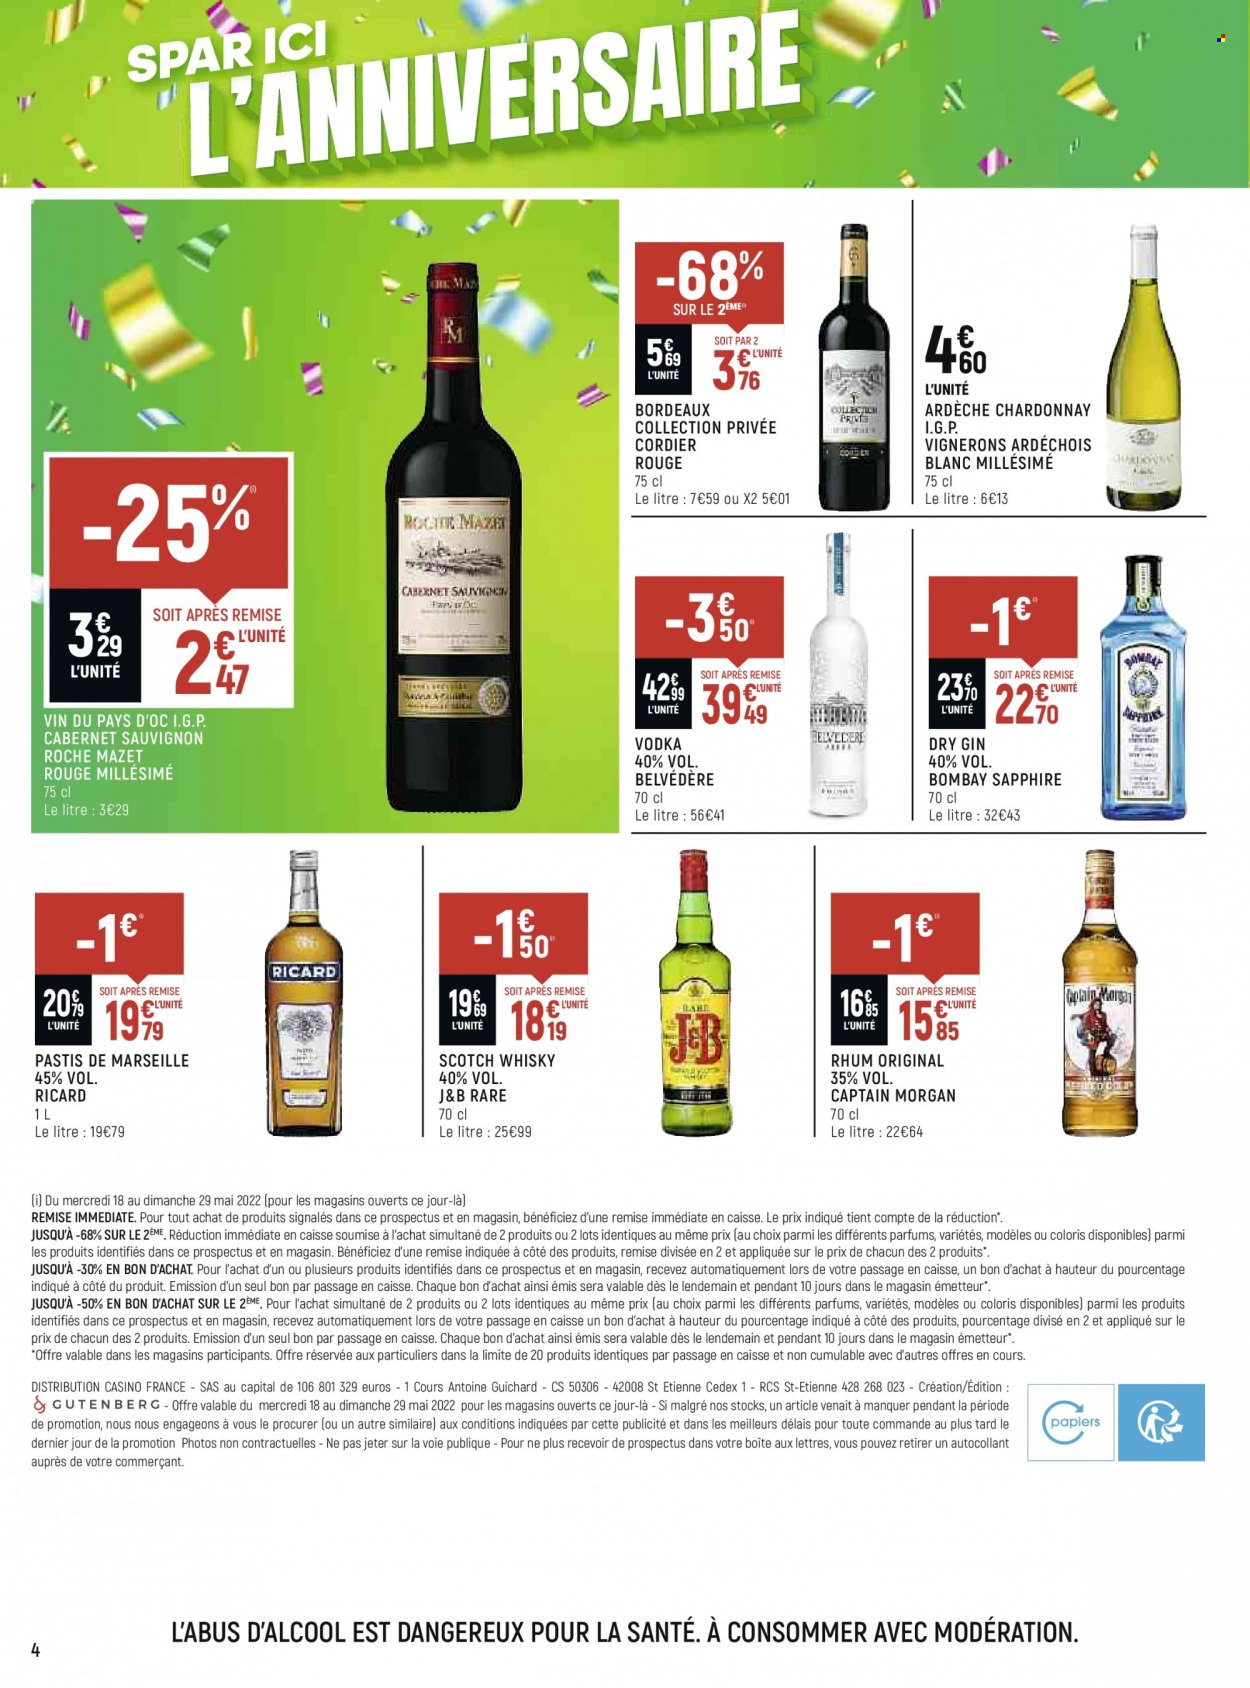 thumbnail - Catalogue SPAR - 18/05/2022 - 29/05/2022 - Produits soldés - Bordeaux, vin blanc, vin rouge, vin, Cabernet Sauvignon, Captain Morgan, gin, vodka, whisky, rhum, pastis, J&B, Belvedere. Page 4.